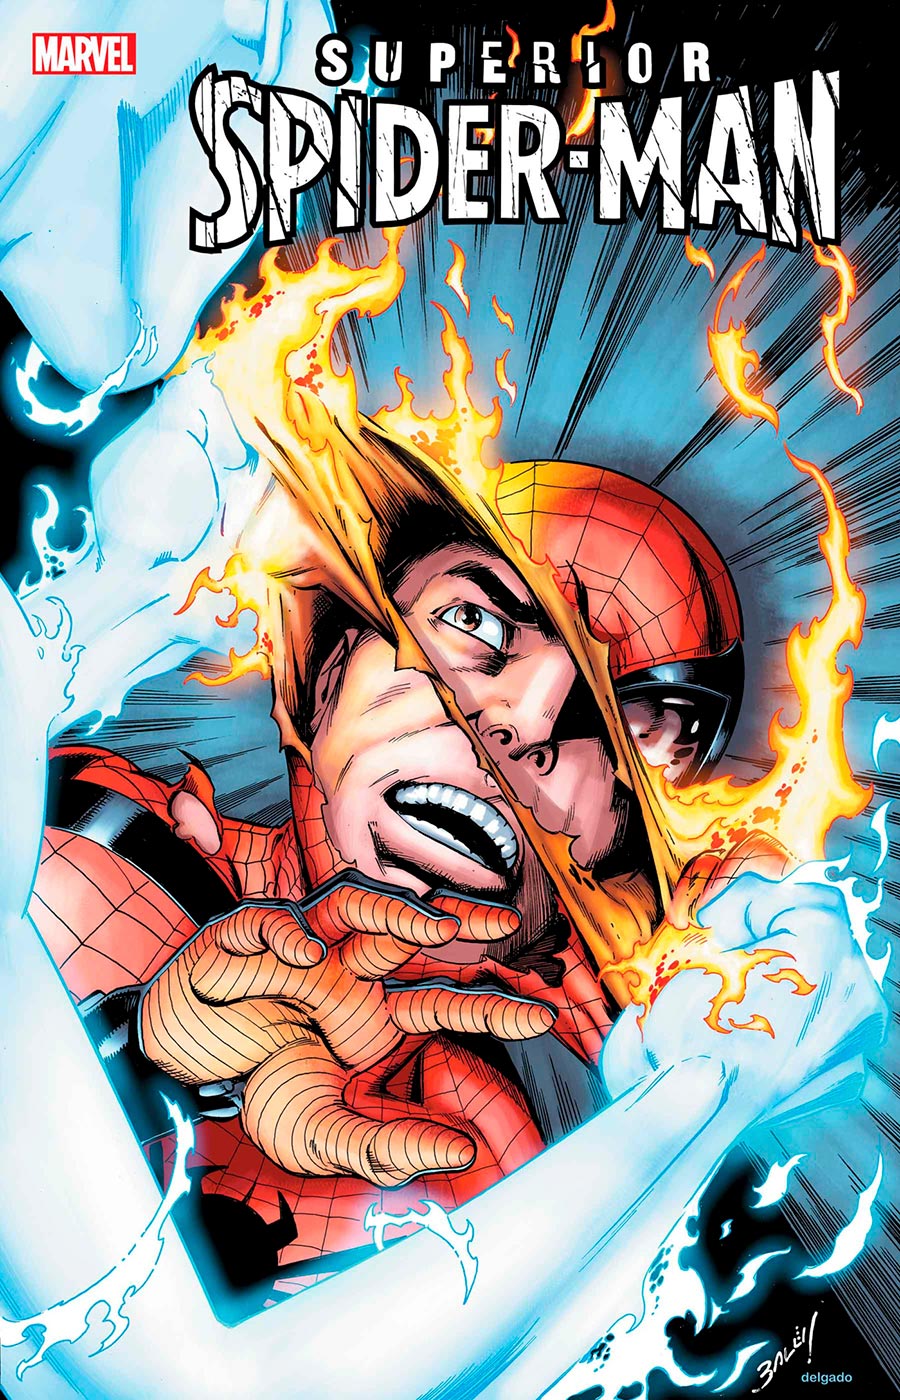 Superior Spider-Man Vol 3 #6 Cover A Regular Mark Bagley Cover